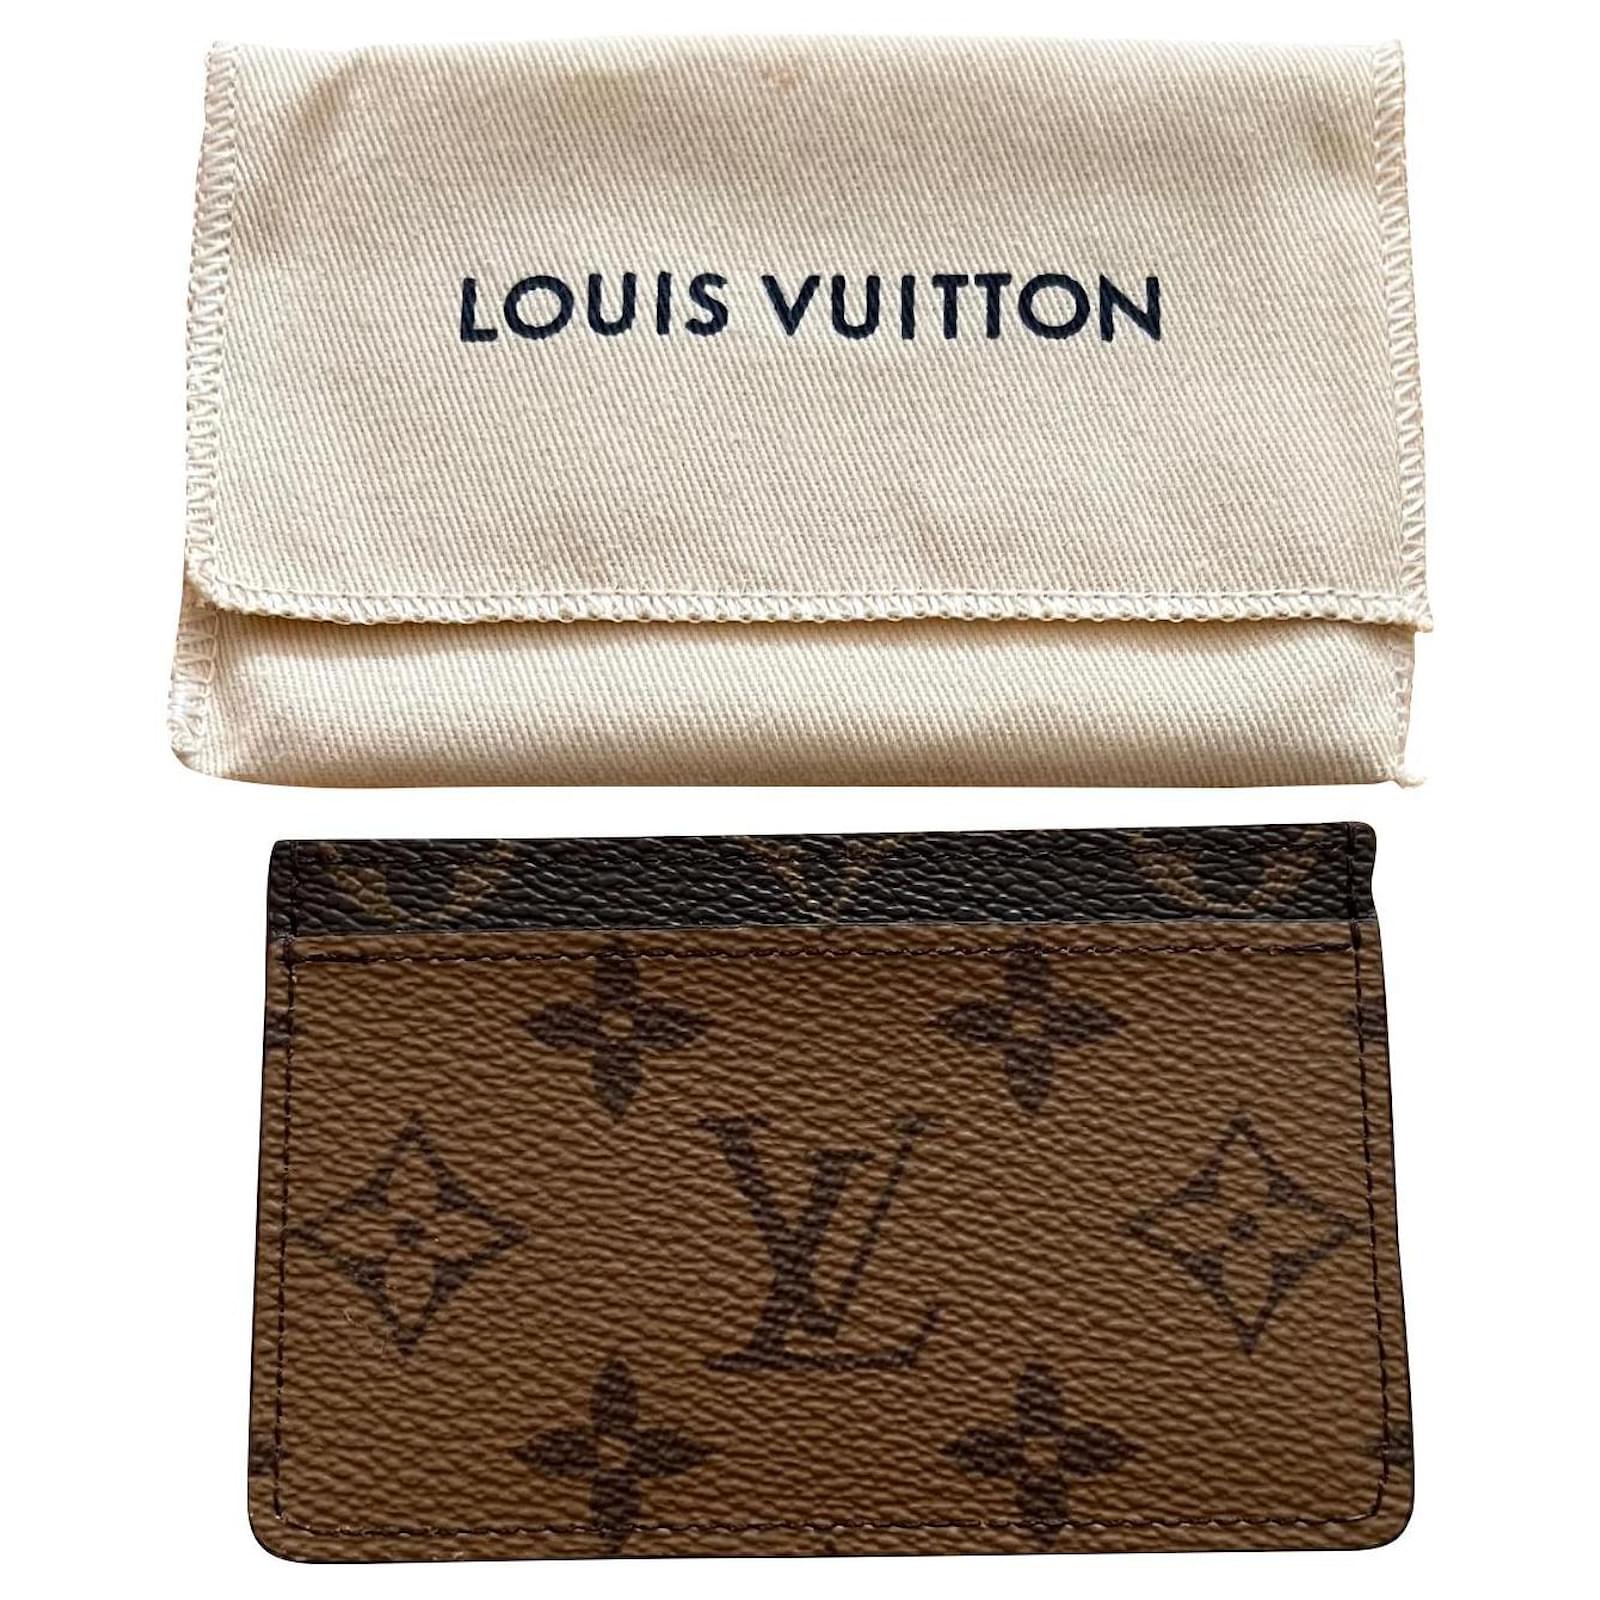 Louis Vuitton CC Holder Virgil Abloh